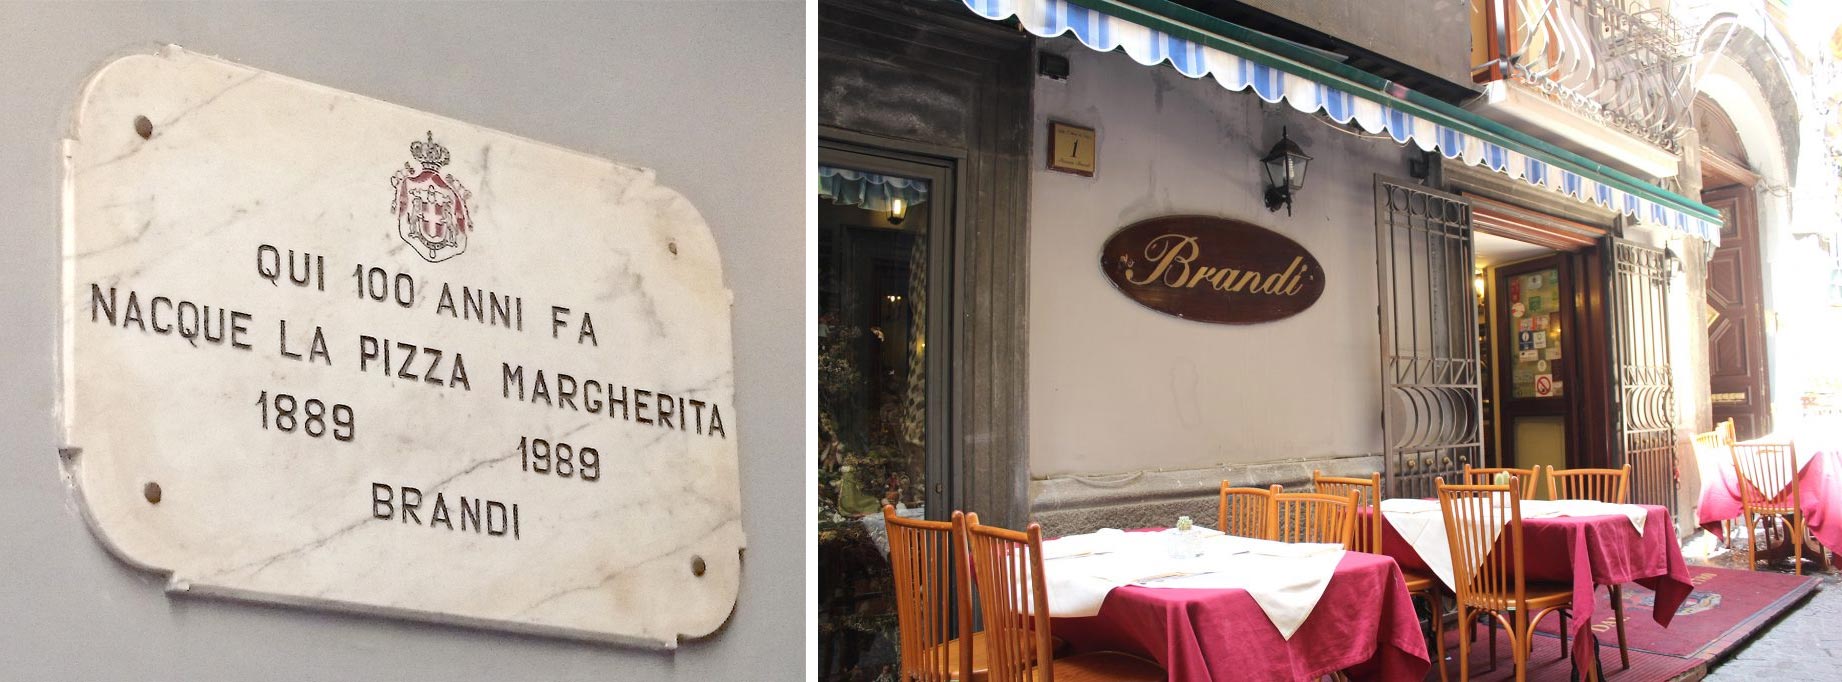 A Pizzaria Brandi no centro de Nápoles e a placa comemorativa ao local do nascimento da pizza Margherita